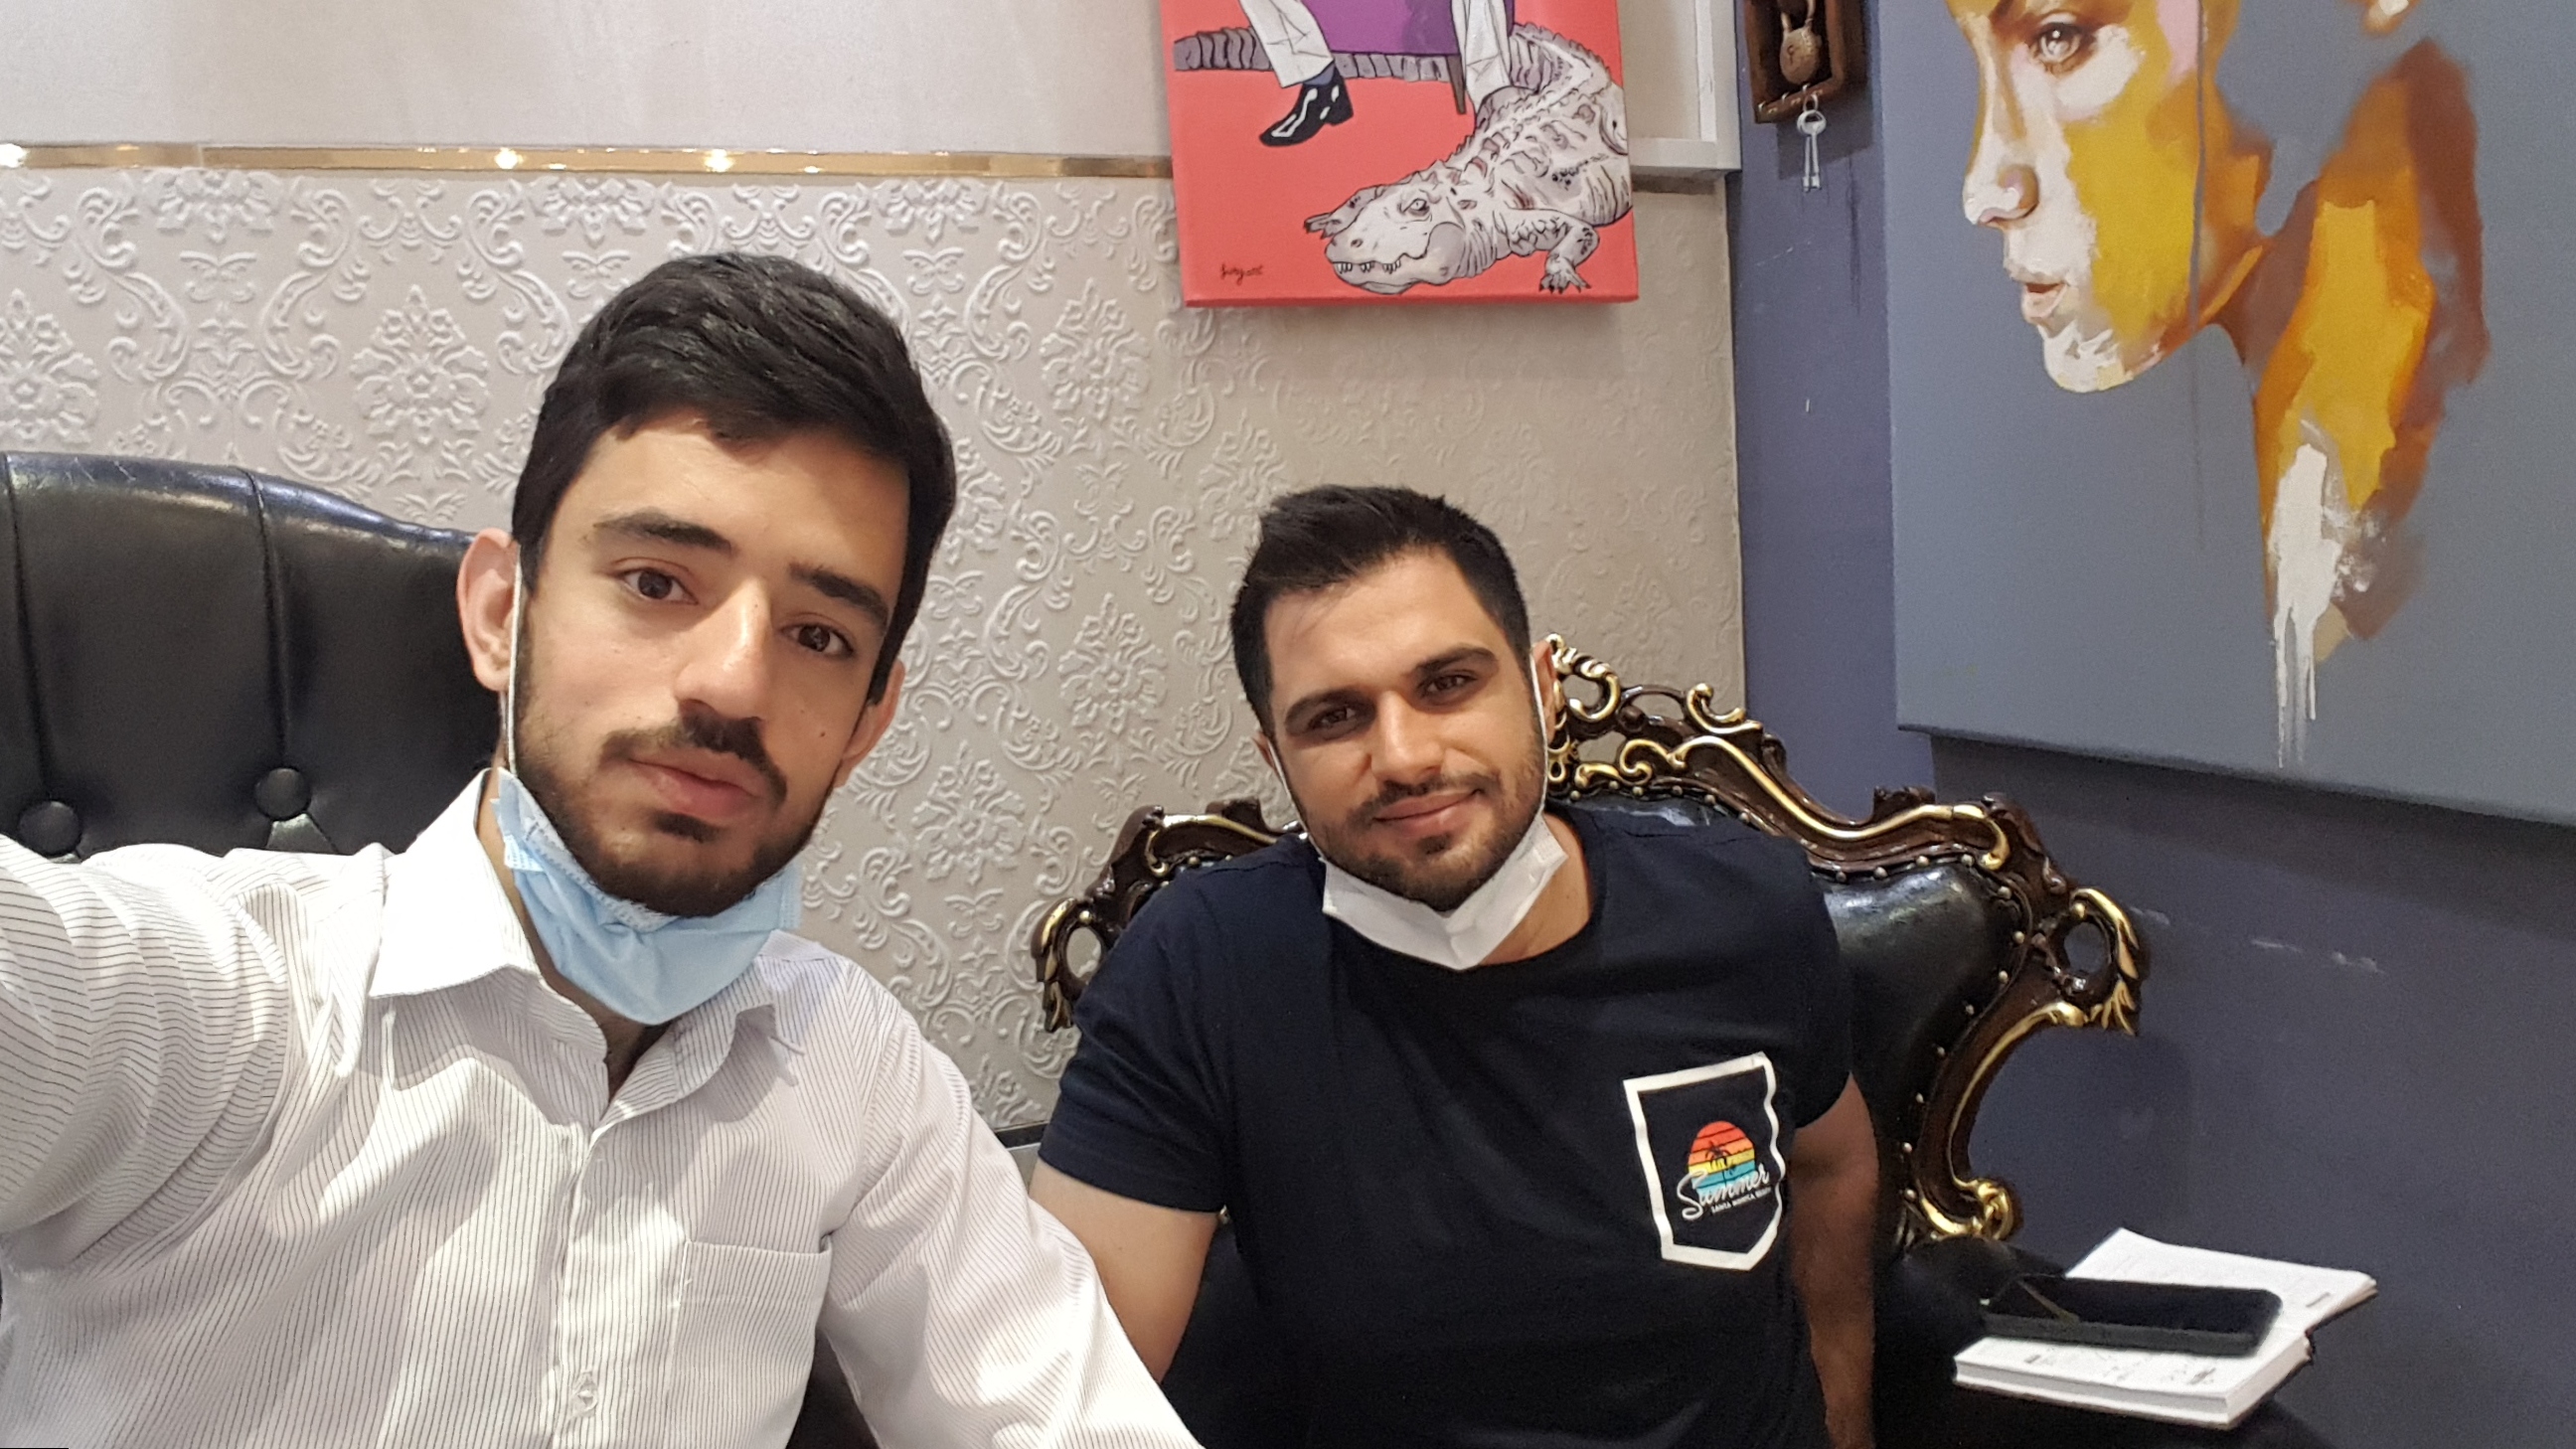 آموزش فتوشاپ در مشهد با آقای دکتر وکیلی